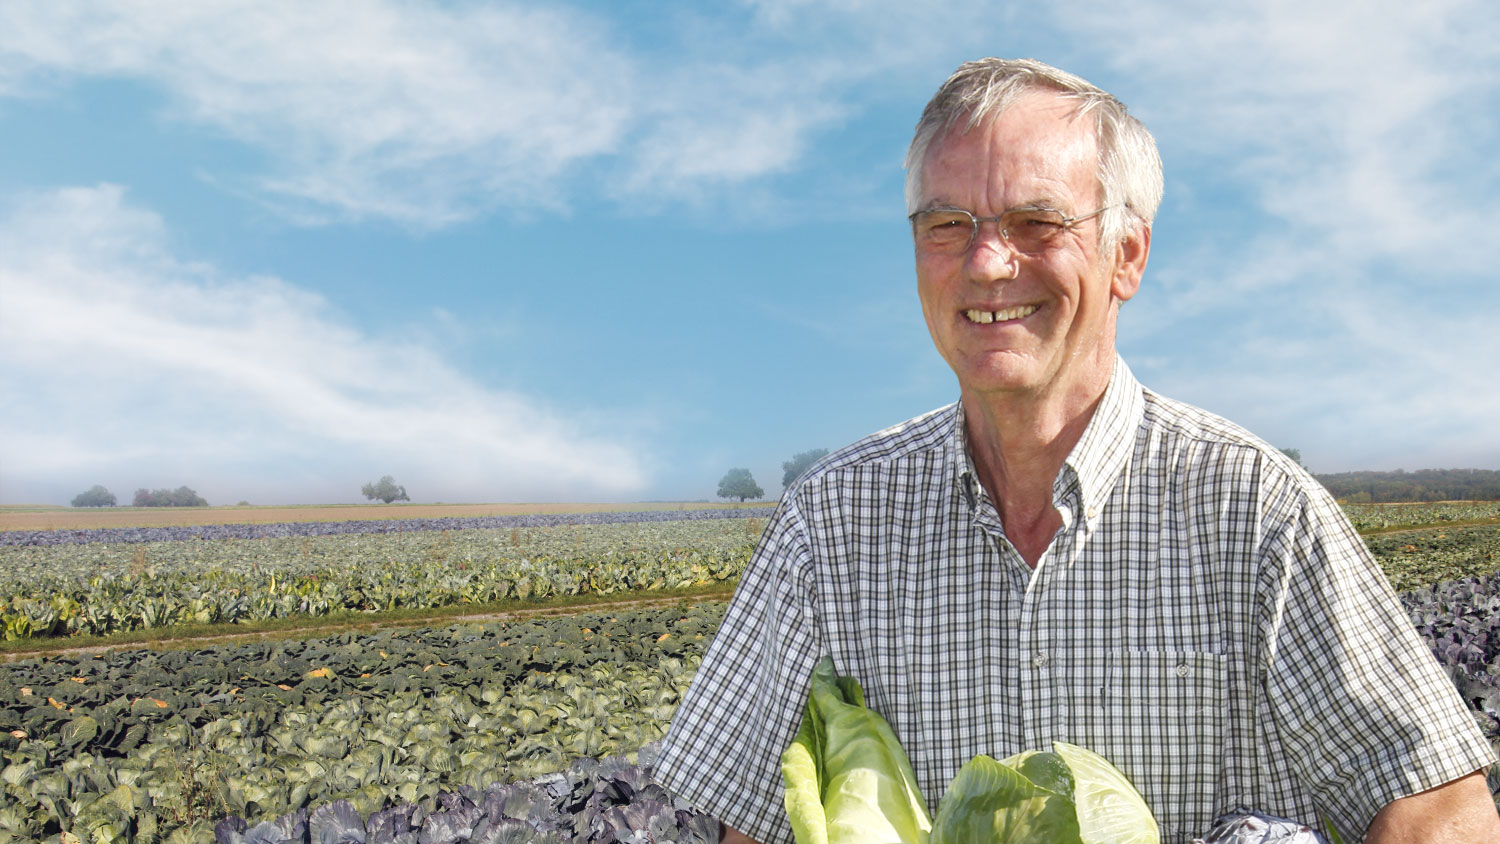 Lächelnder Mann in kariertem Hemd steht in einem sonnigen Kohlfeld und hält frisch geerntete Kohlköpfe aus Eigenproduktion. Im Hintergrund erstrecken sich Reihen von Kohlpflanzen.